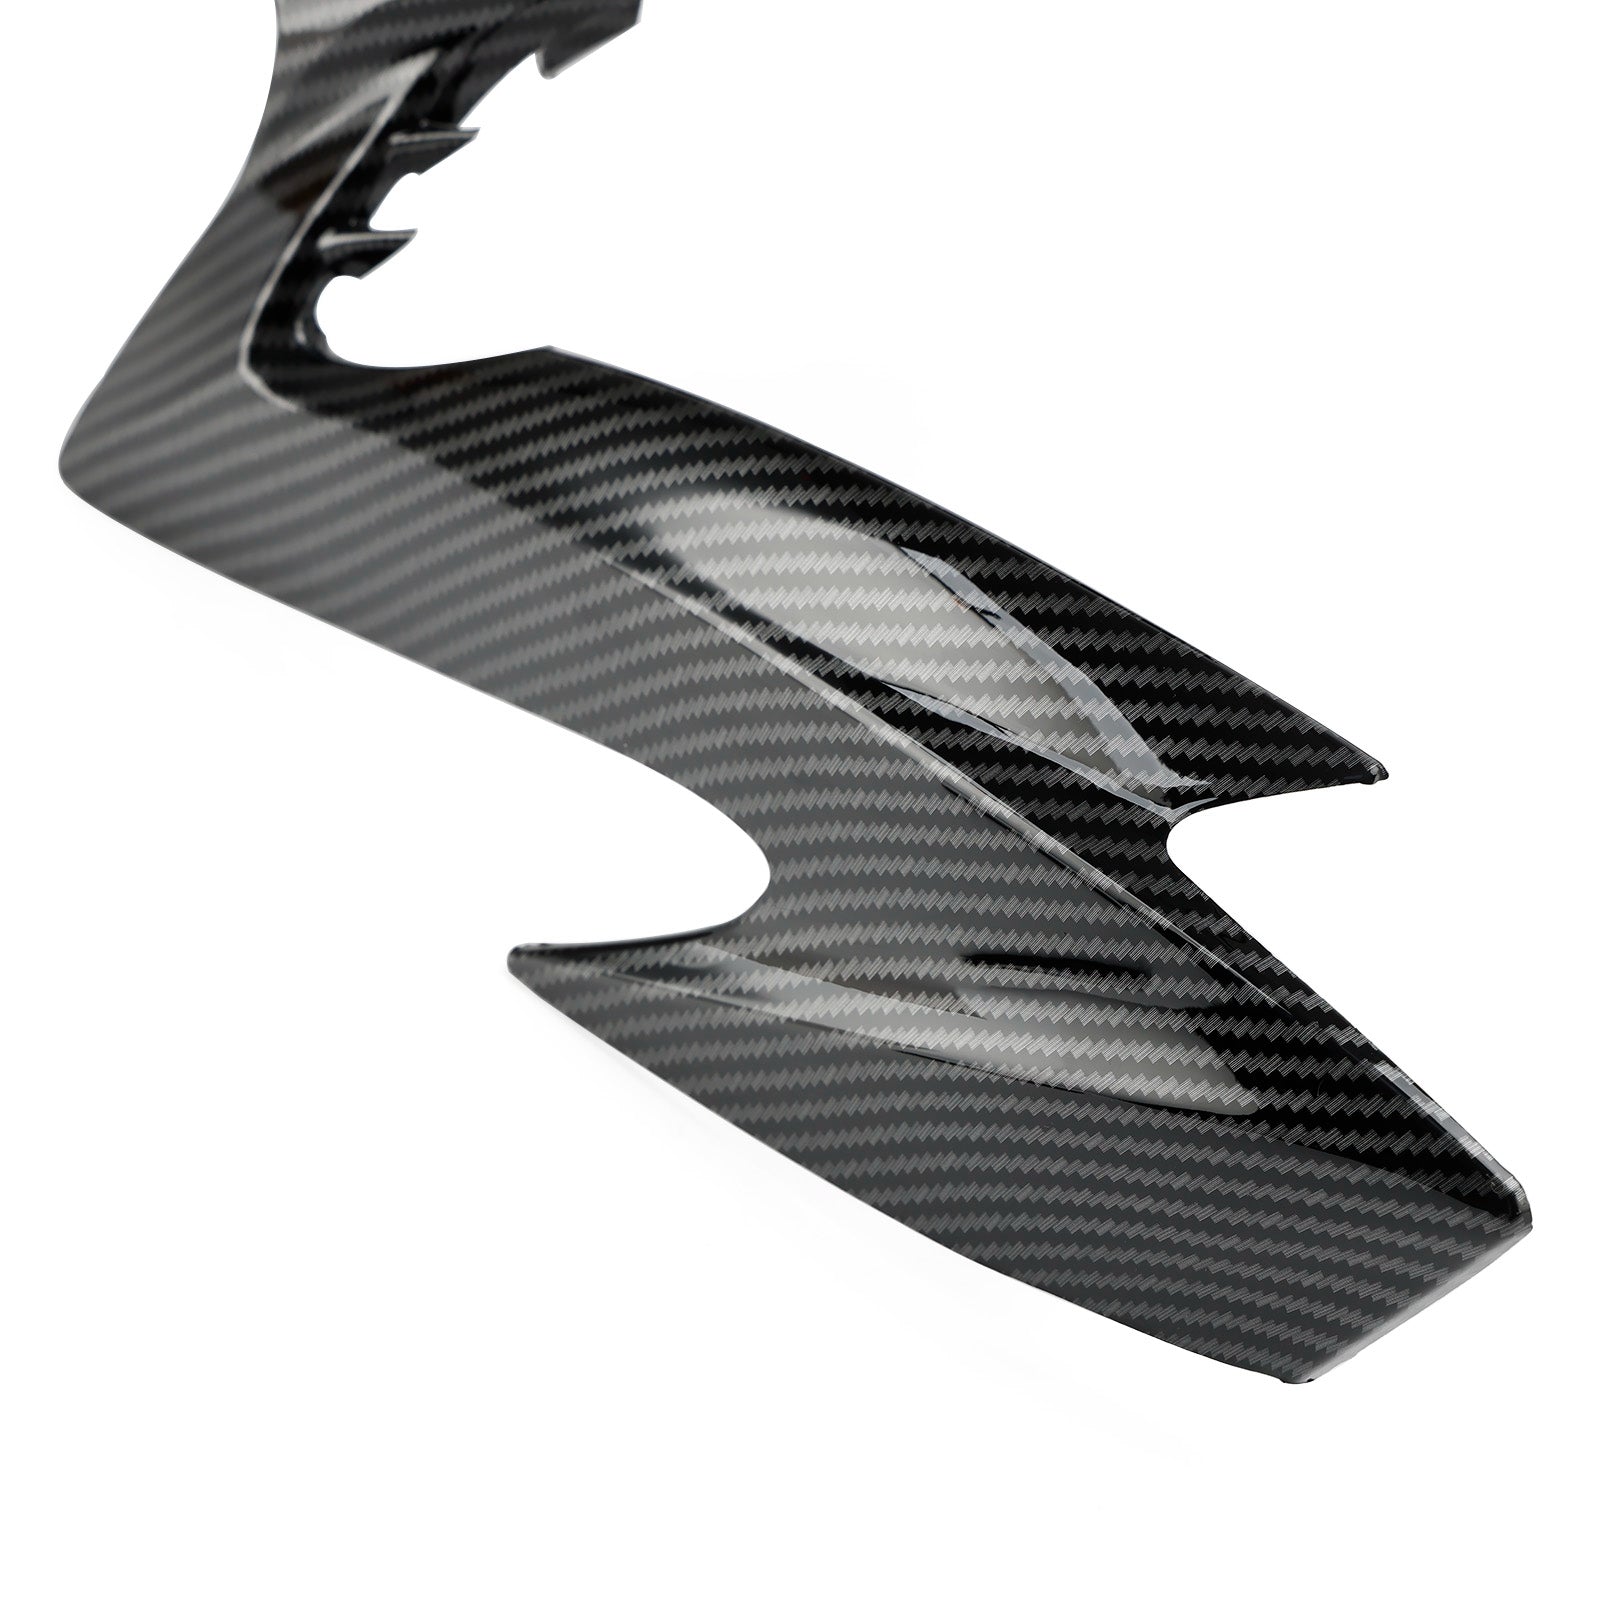 Frontnase-Scheinwerferabdeckungsverkleidung für Suzuki GSX-S 1000 2015–2020